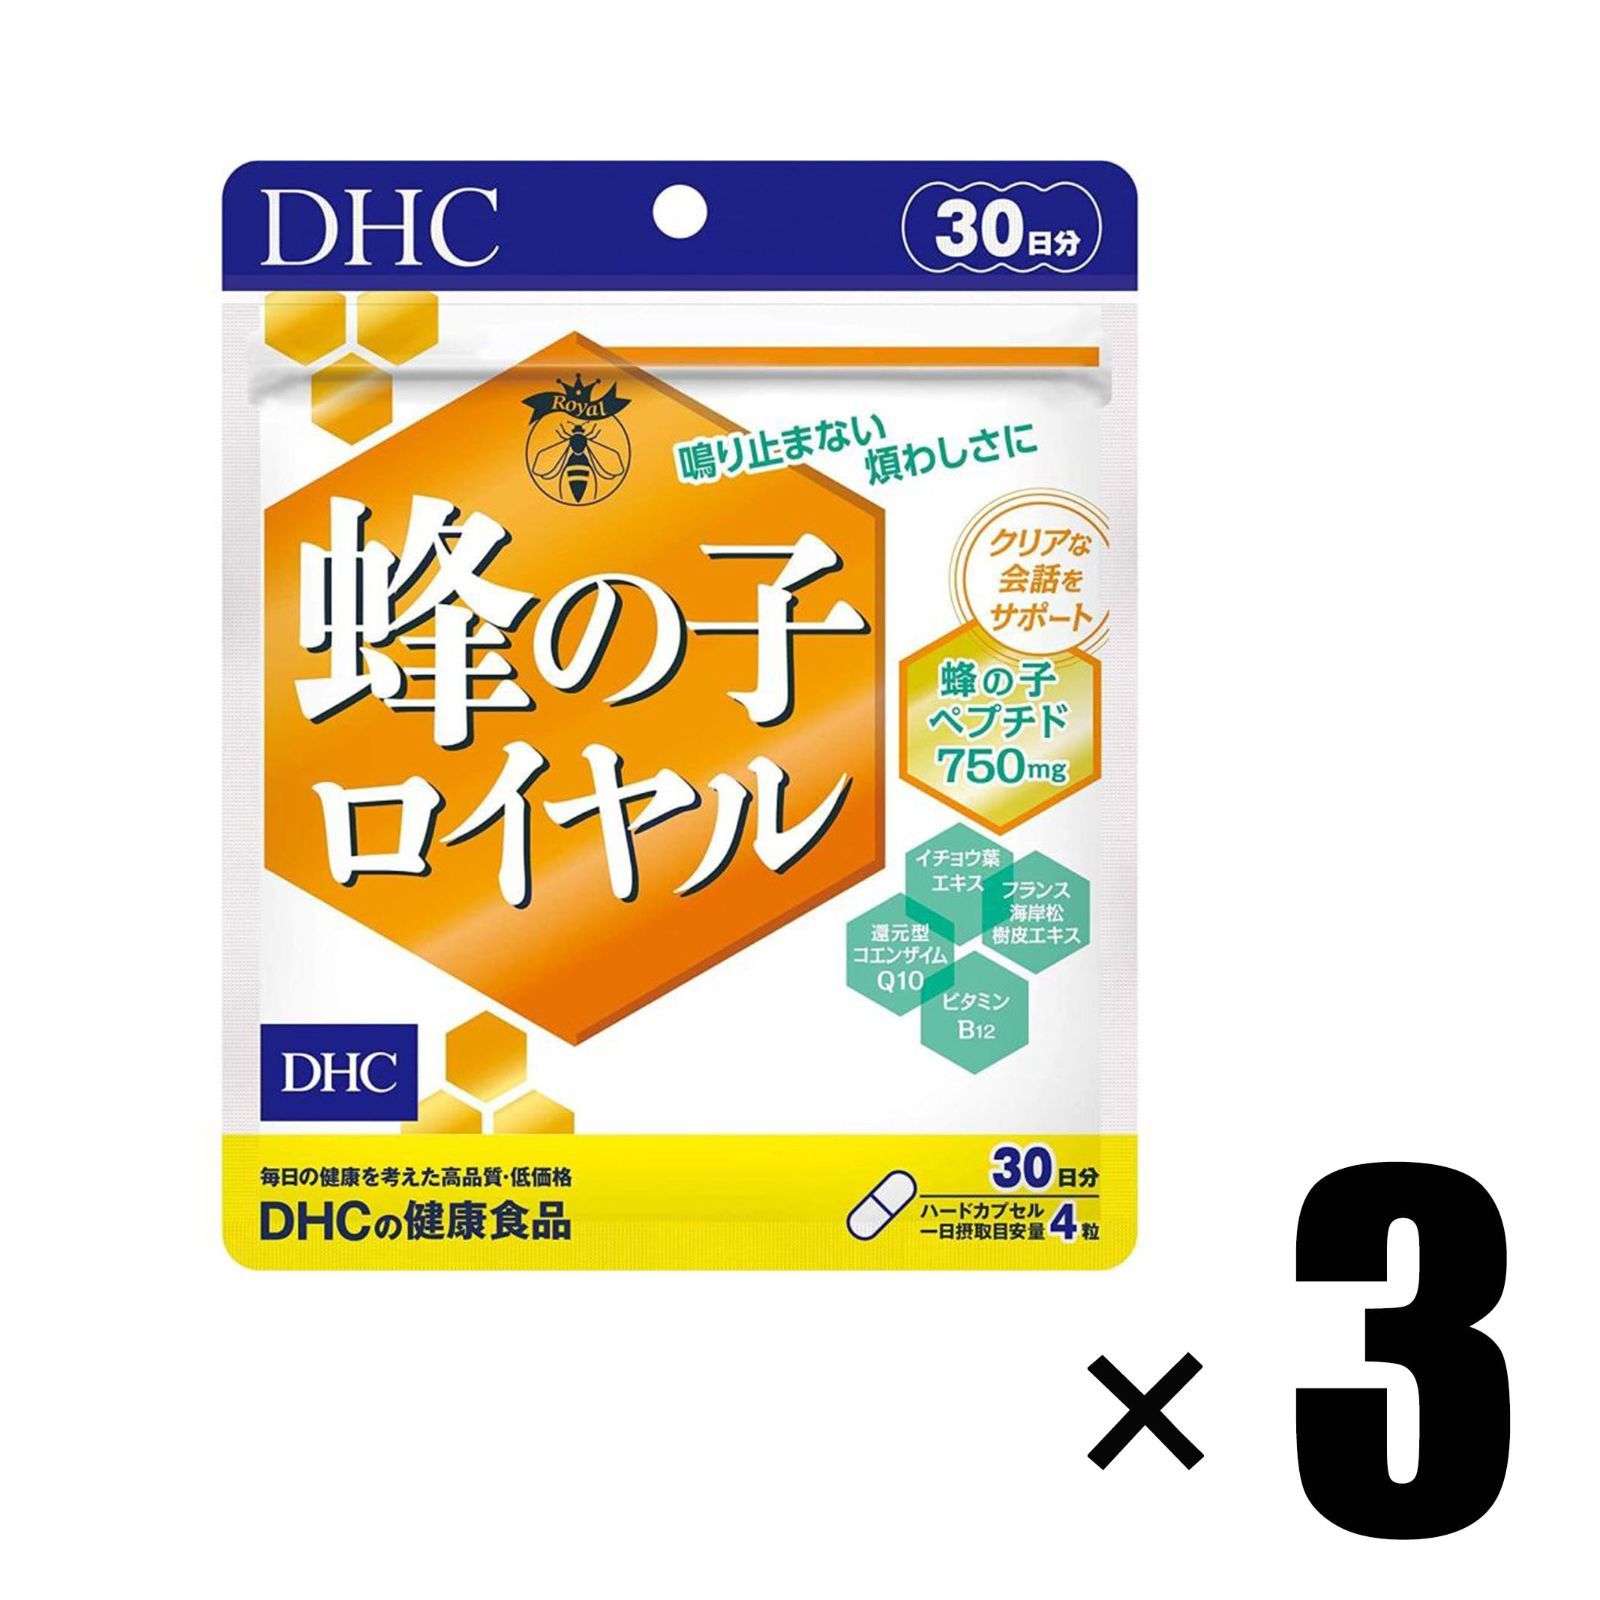 3個) DHC 蜂の子ロイヤル 30日分 ×3個 ディーエイチシー - メルカリ